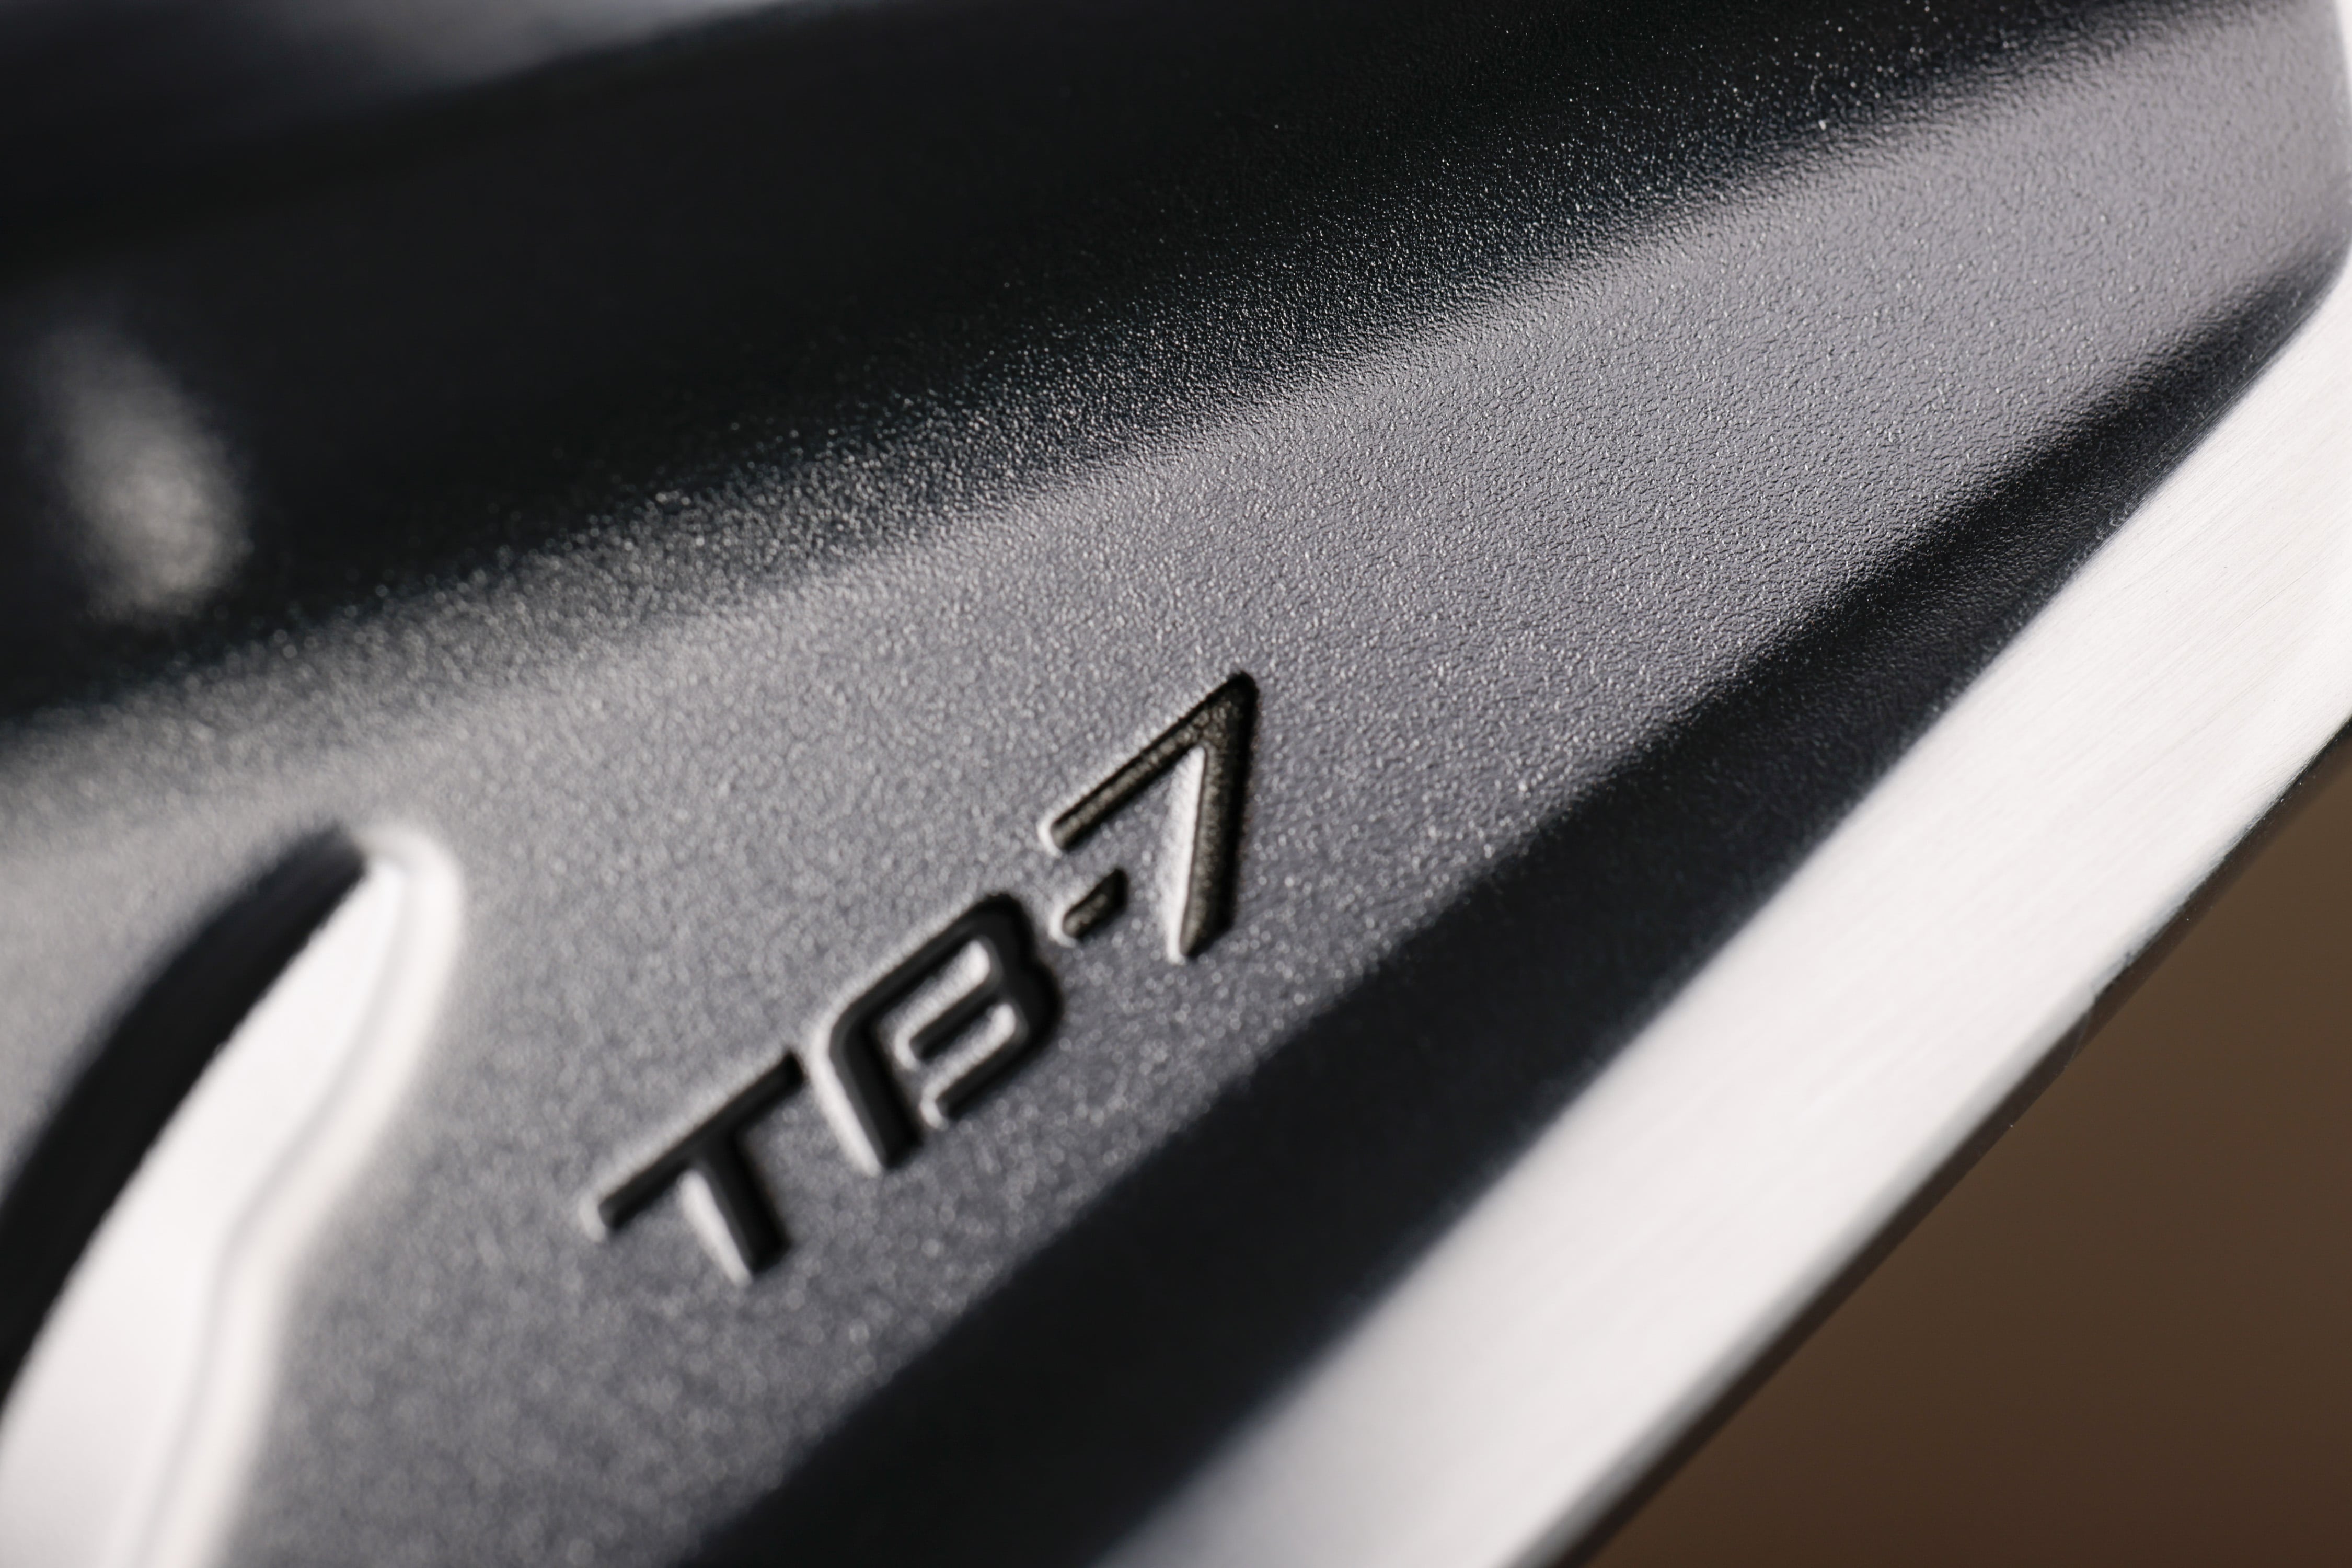 「TB-7 FORGED」のバックフェース面は精密鍛造が施され、その表面は傷に強く美しさを持続します。